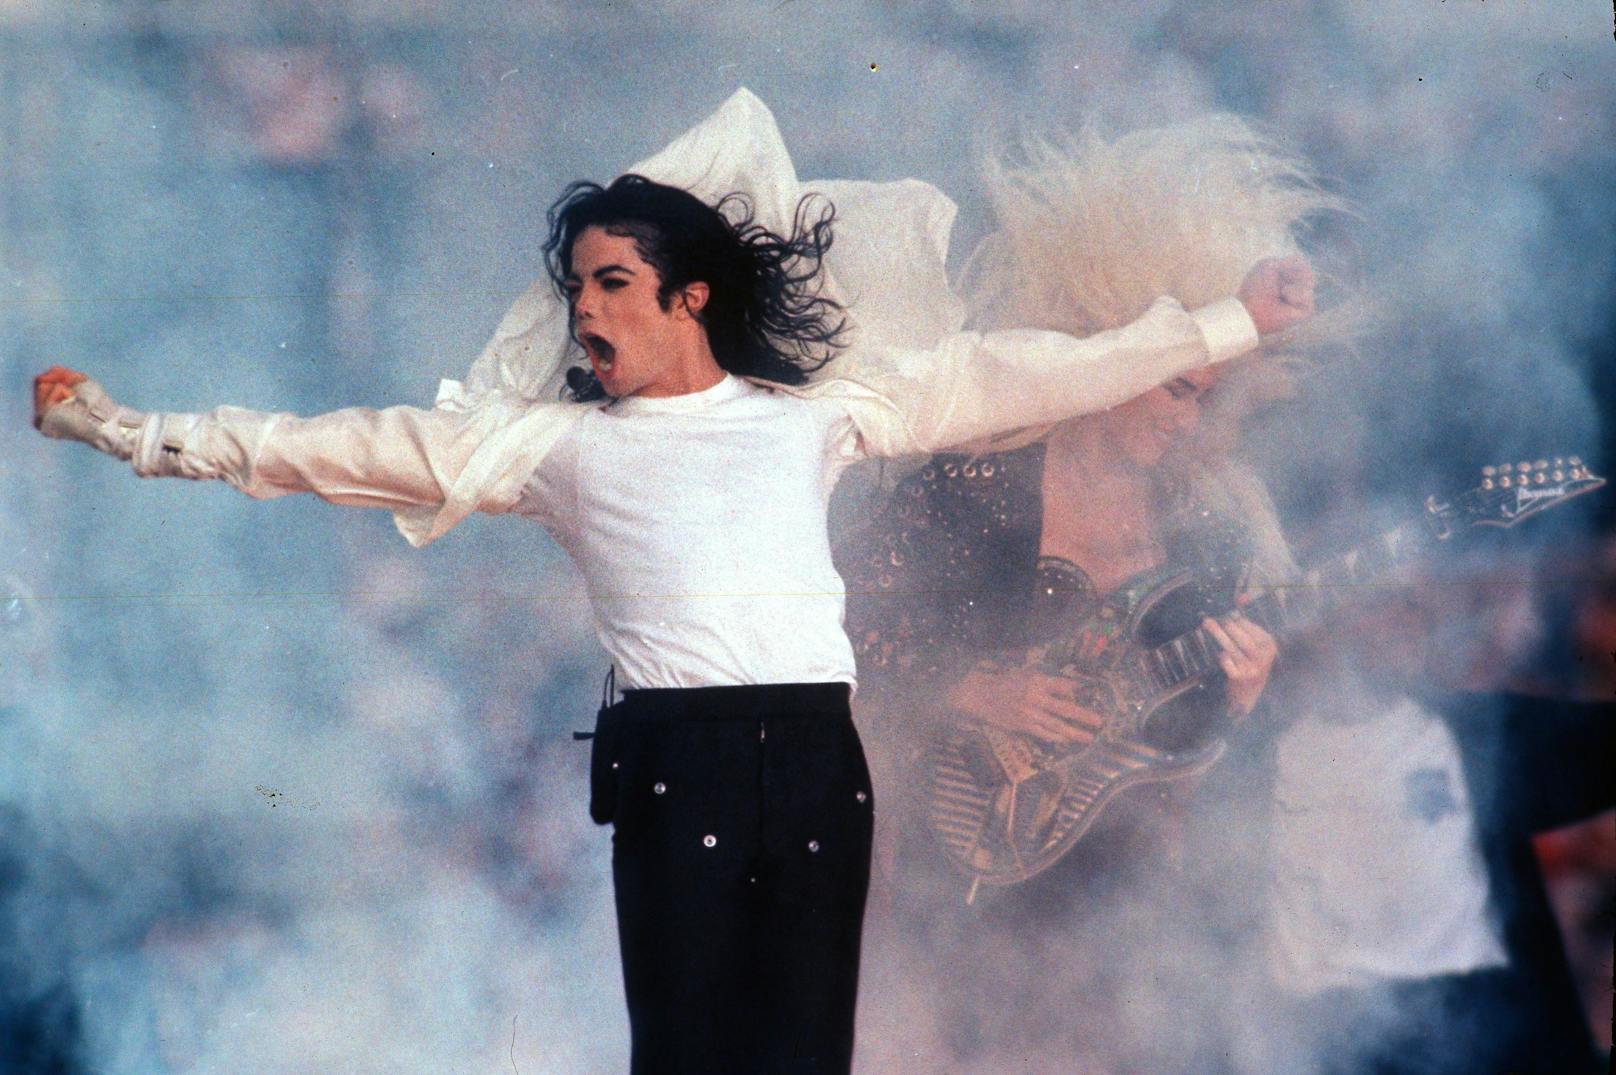 Trotz seines immensen Erfolgs hatte Michael Jackson aufgrund von exzessiven Ausgaben und Rechtsstreitigkeiten erhebliche finanzielle Probleme